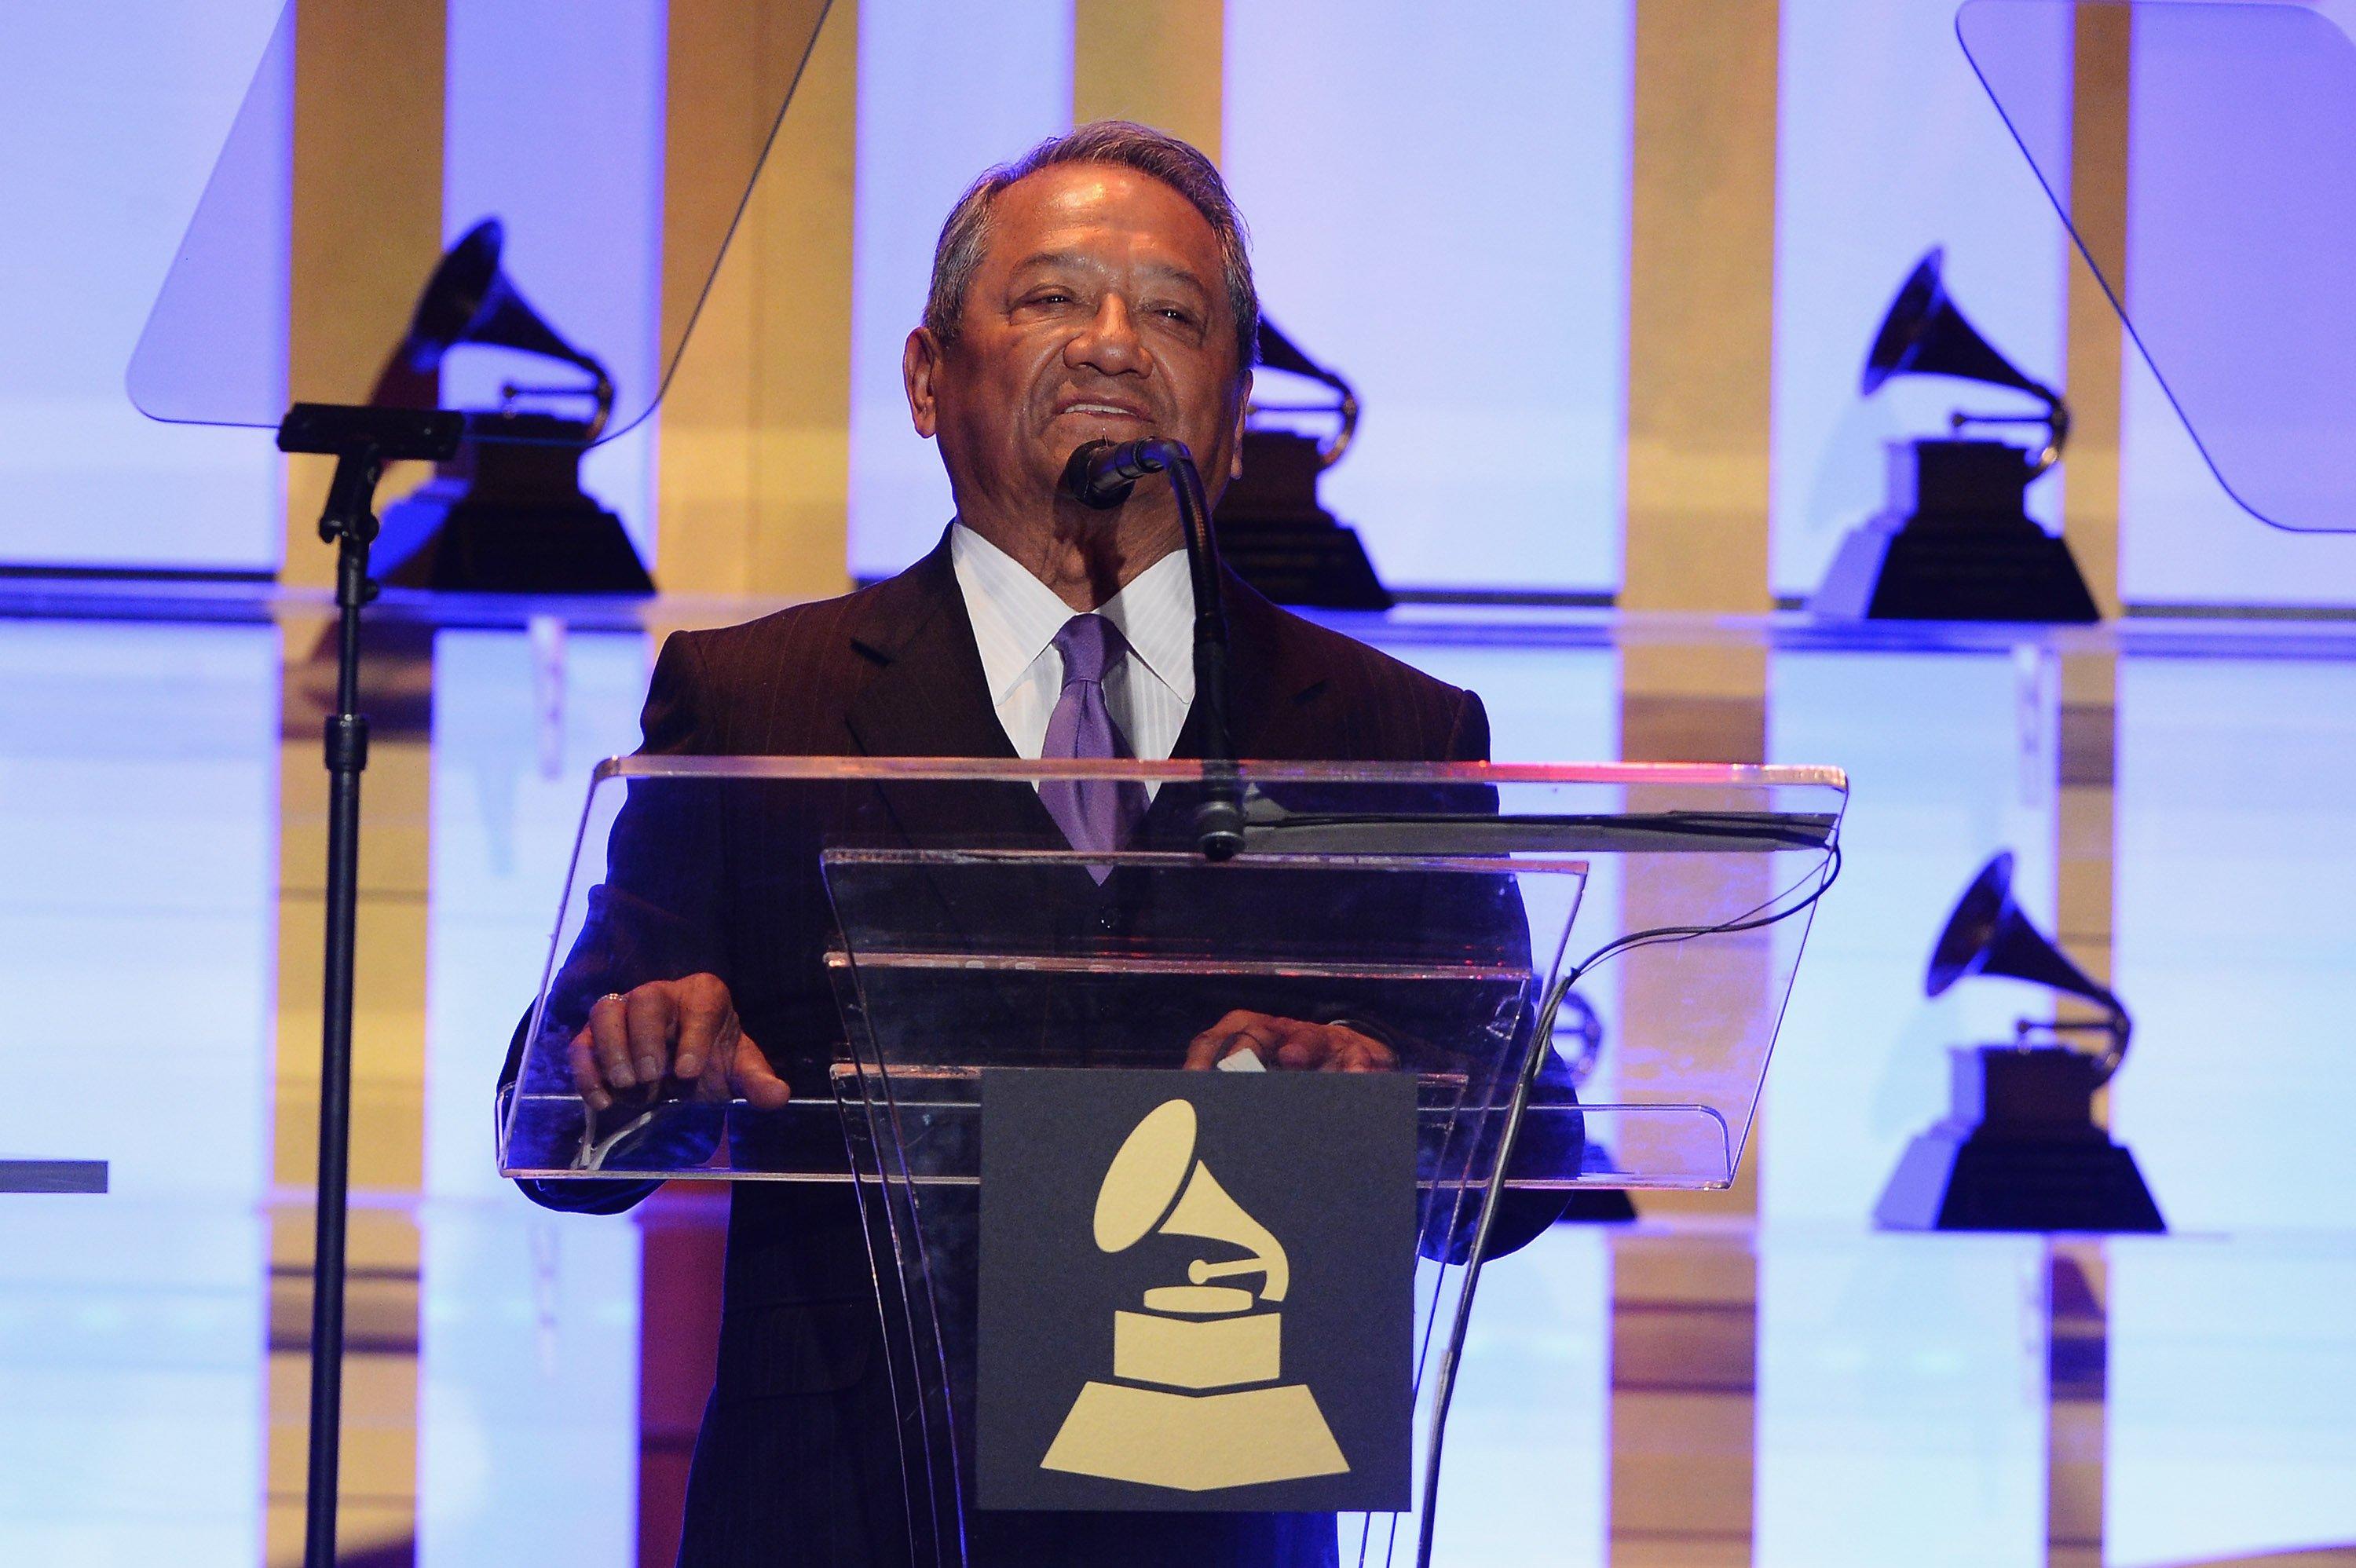 Armando Manzanero accepts the Lifetime Achievement Award in 2014